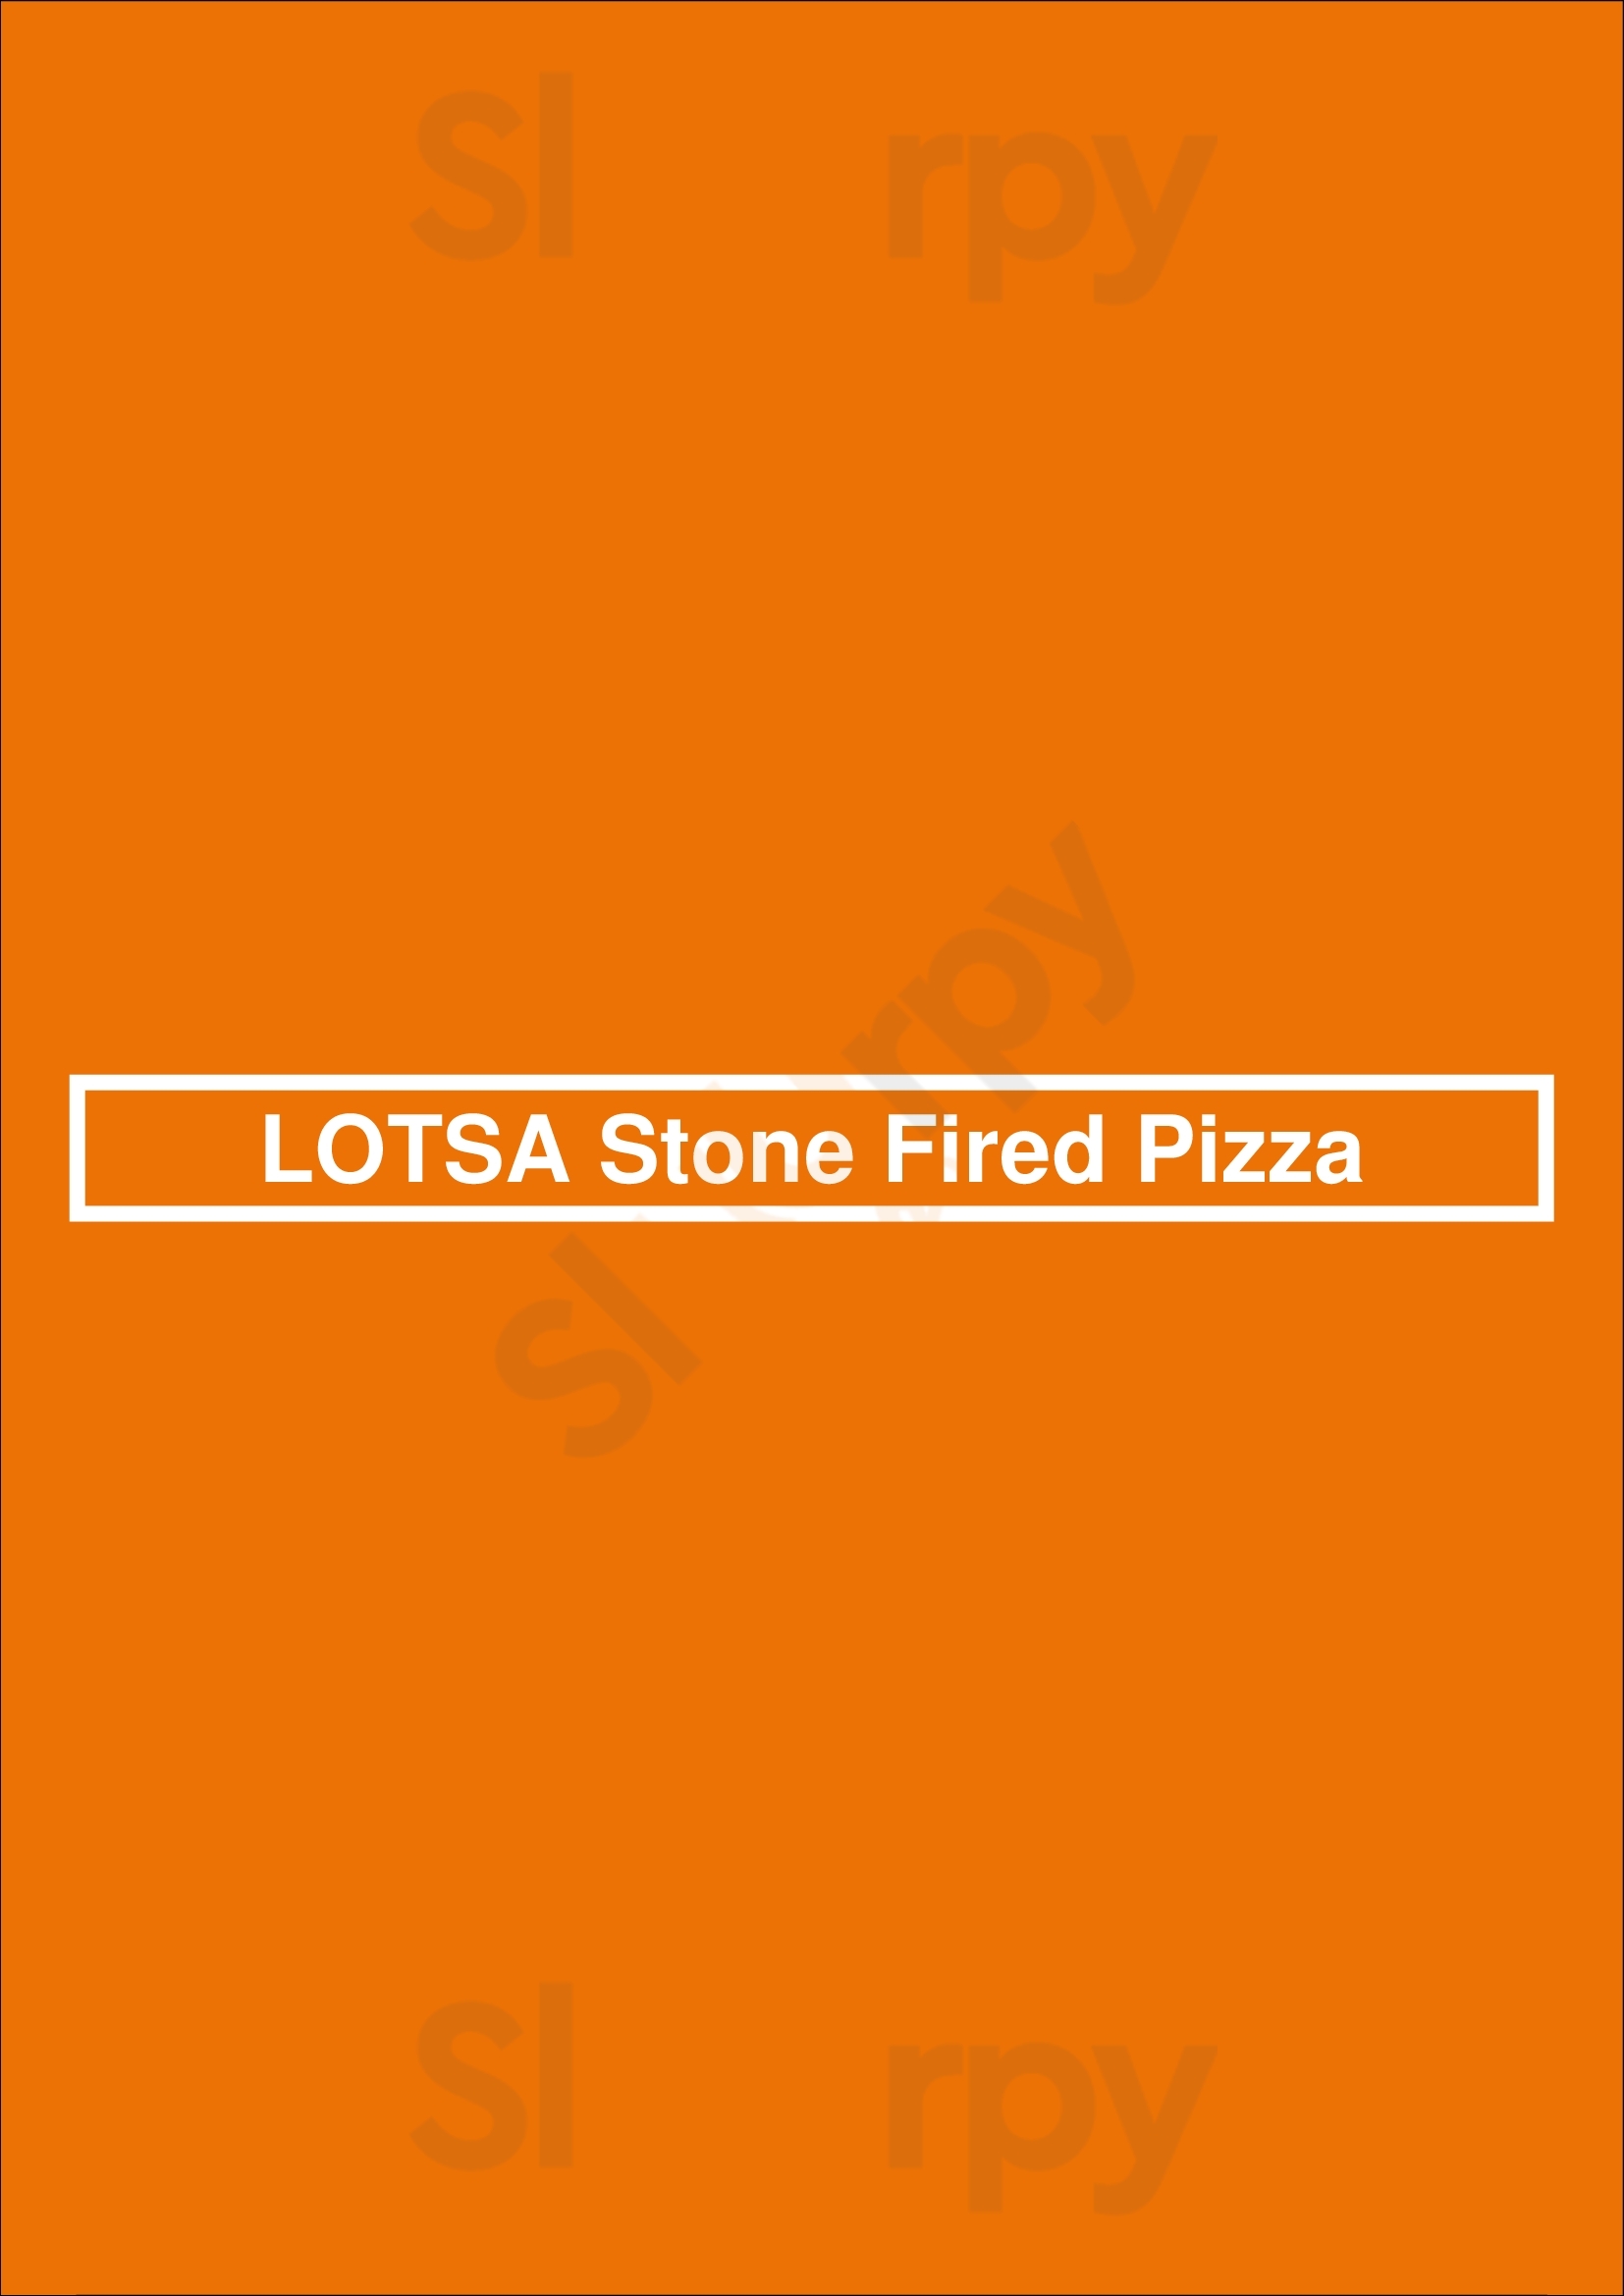 Lotsa Stone Fired Pizza Pittsburgh Menu - 1